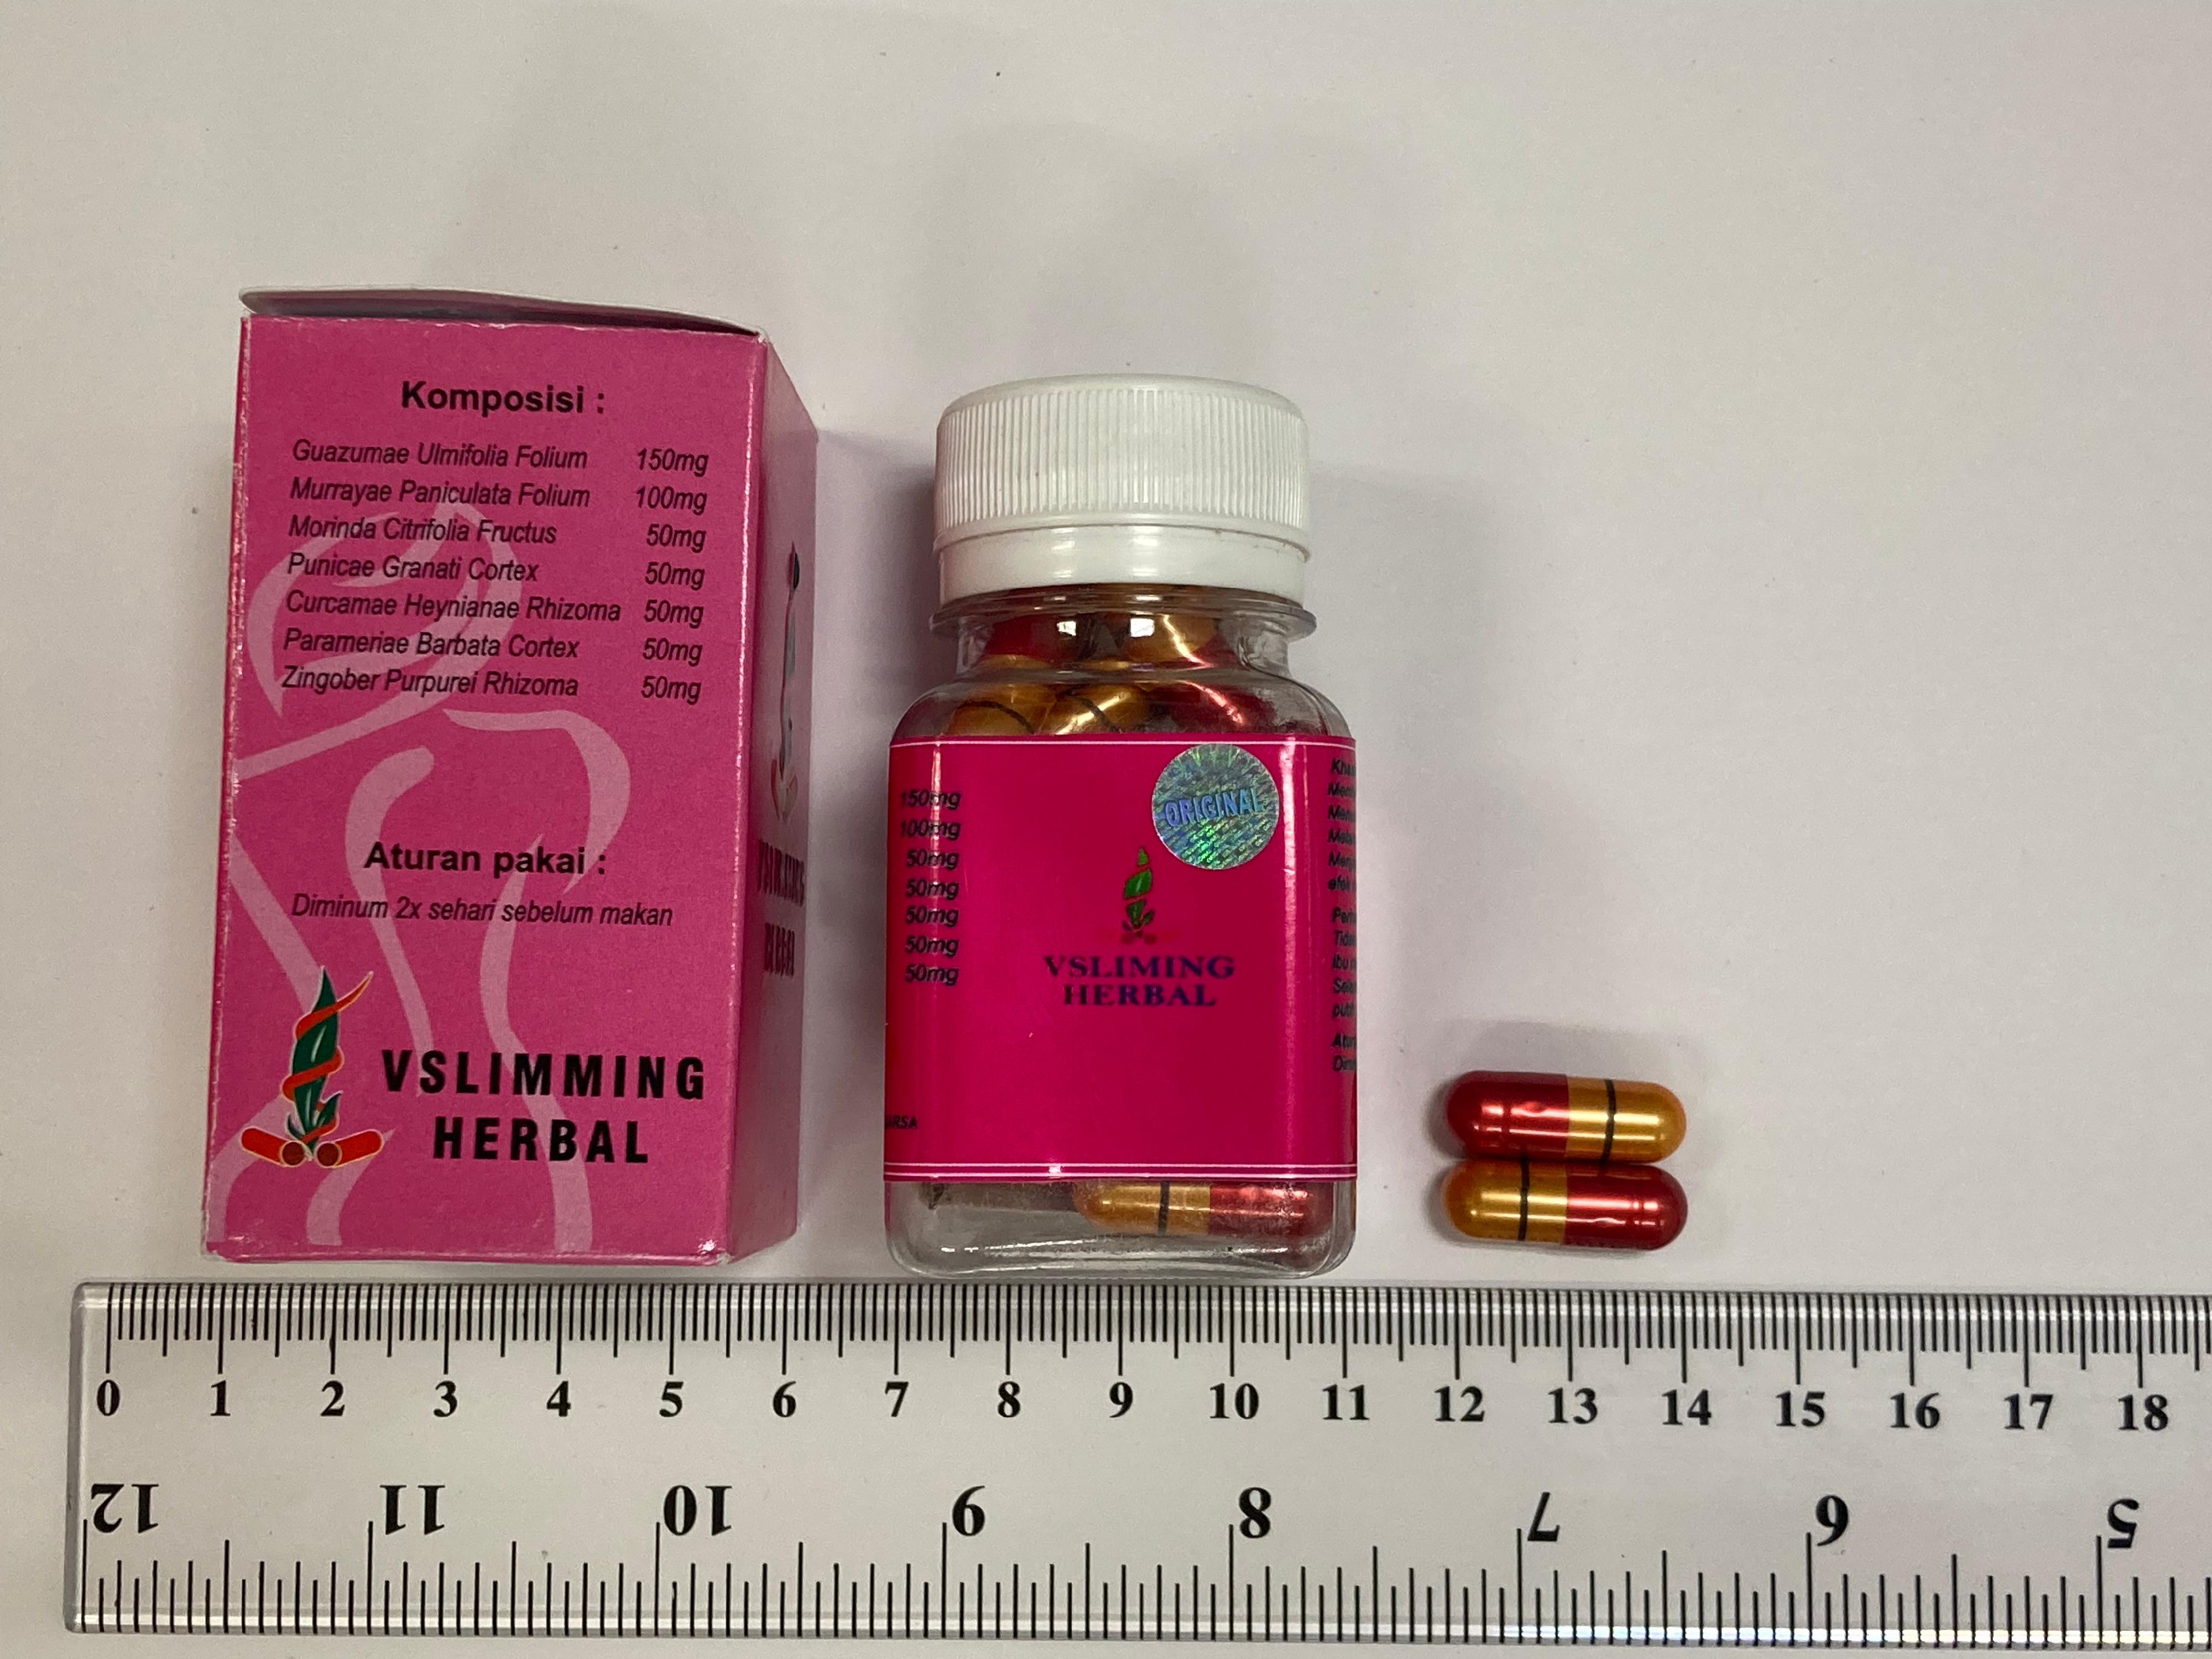 衞生署今日（六月二十四日）就銷售一款名為「VSlimming Herbal」的瘦身產品採取行動，該產品被發現含有未標示受管制藥物成分，包括已禁用的西藥成分。行動中，一名57歲男子涉嫌非法售賣及管有第1部毒藥及未經註冊藥劑製品被警方拘捕。圖示該款瘦身產品。